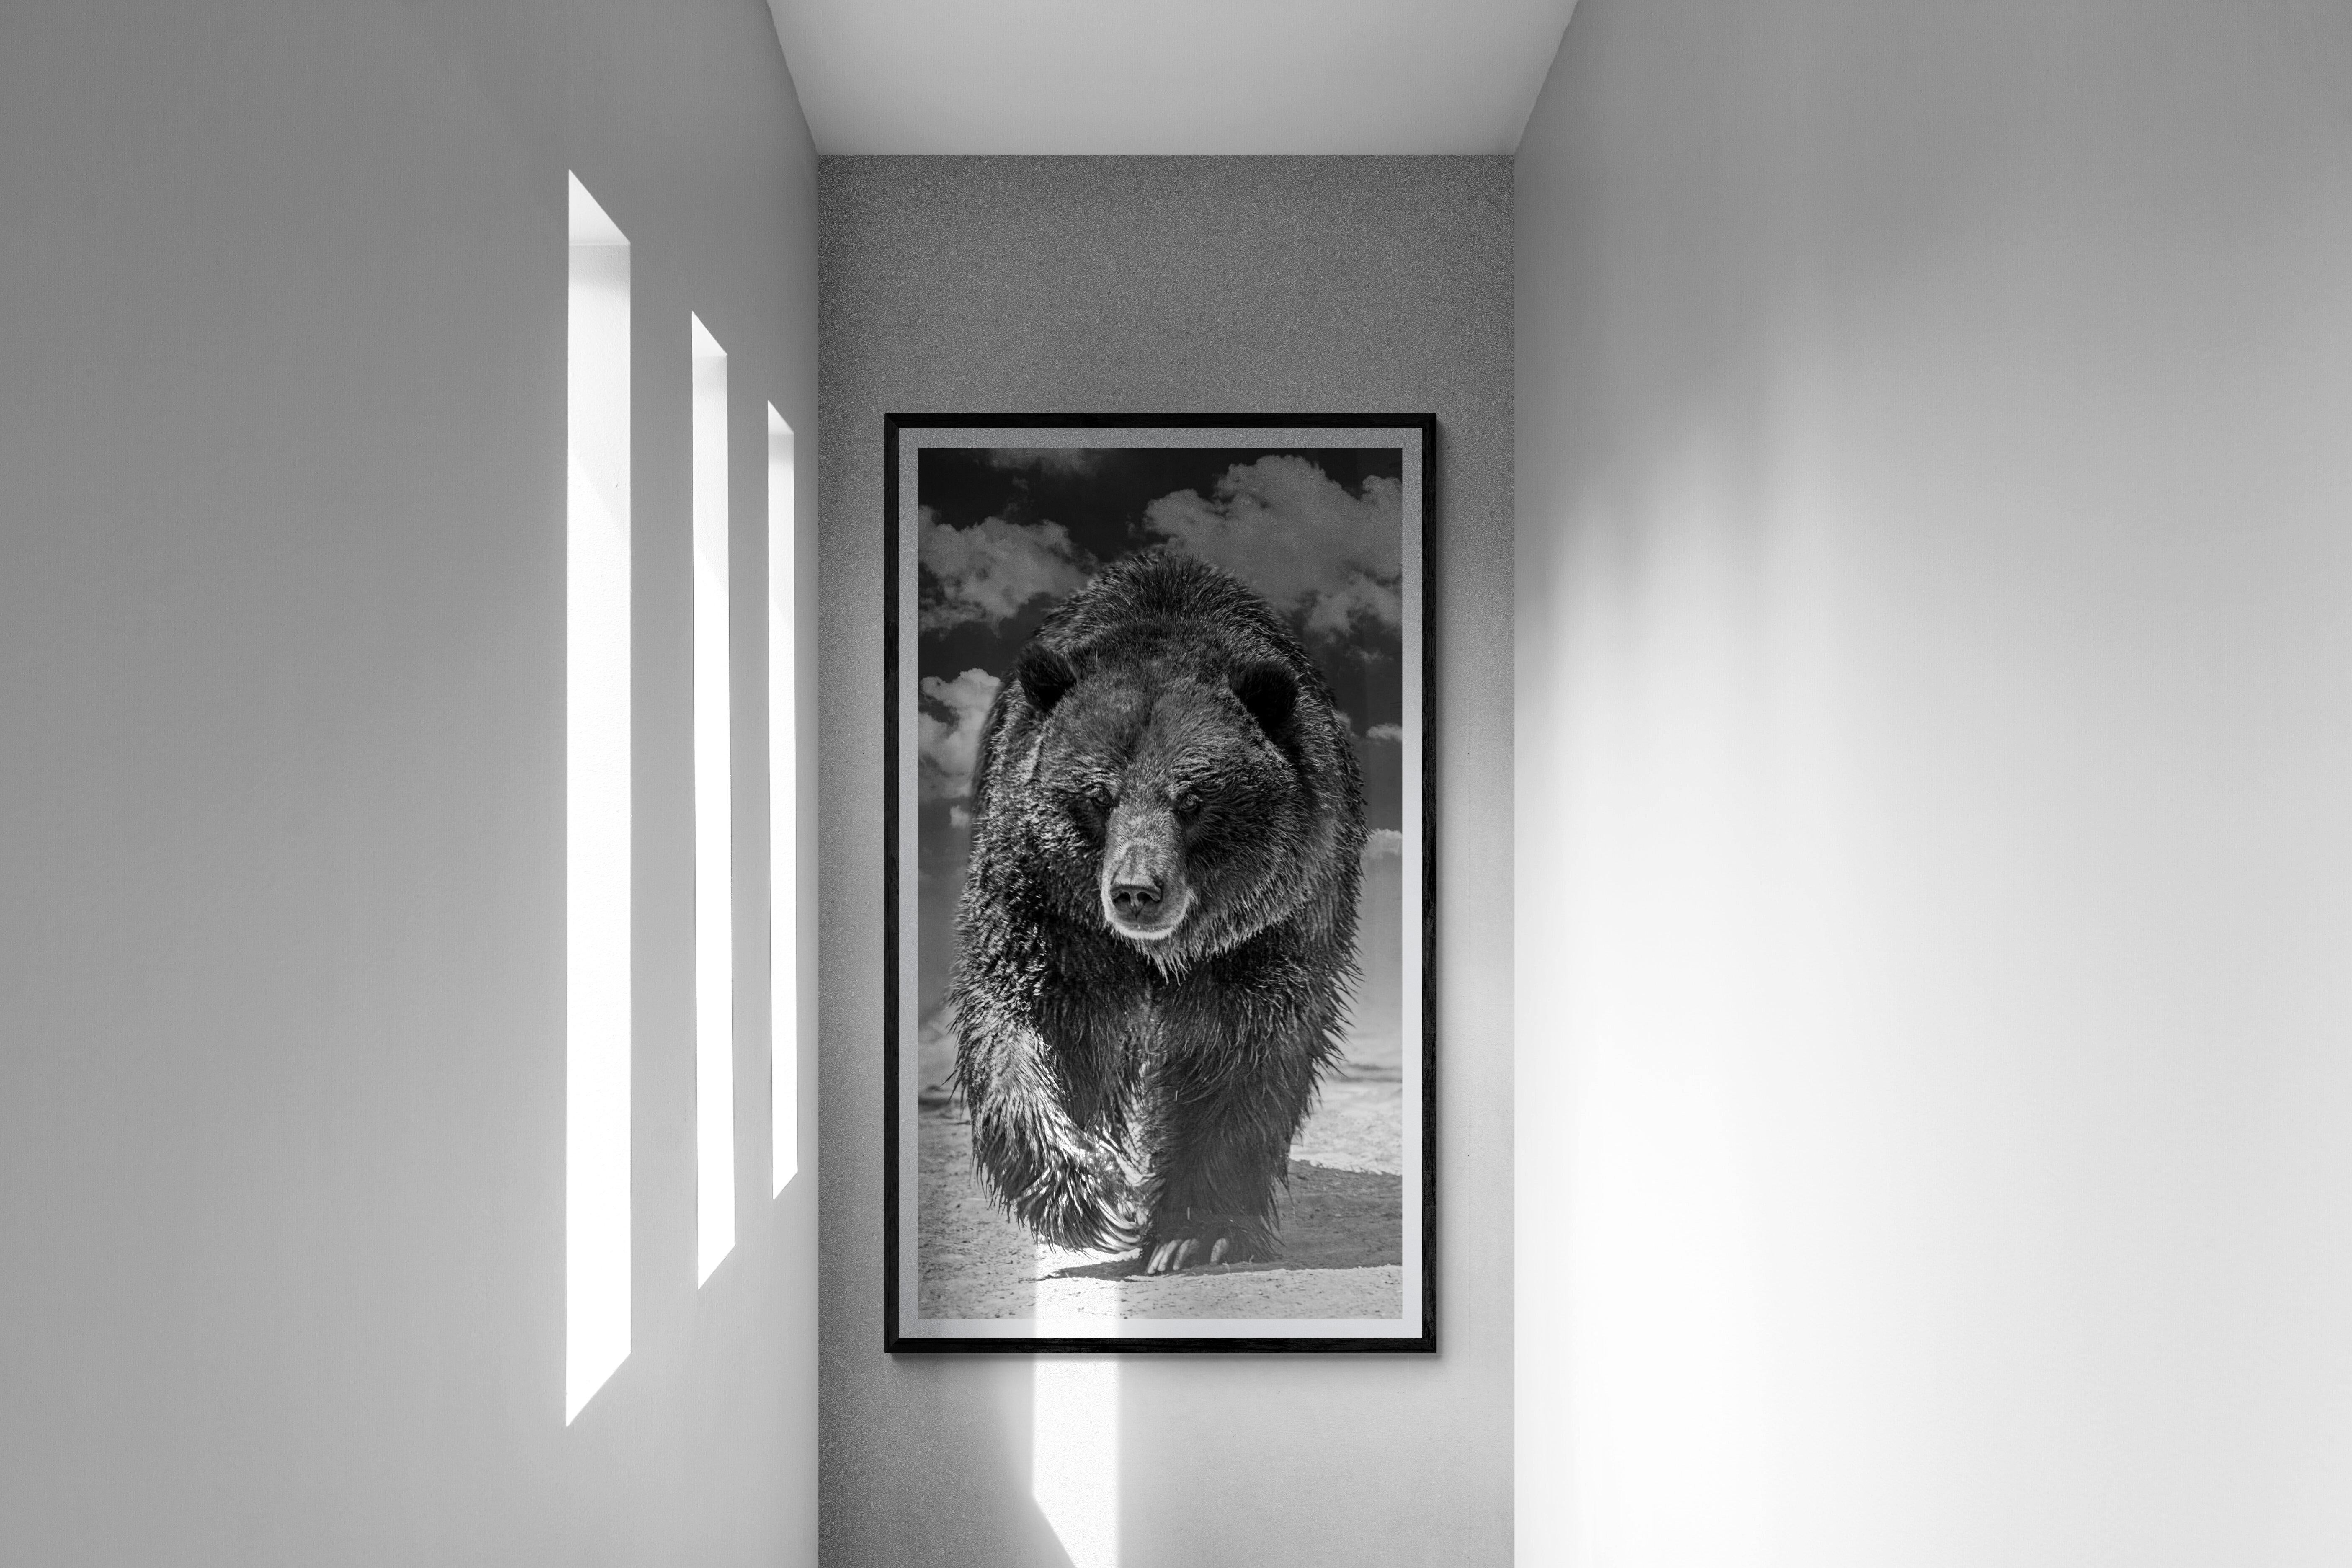 Dies ist eine Schwarz-Weiß-Fotografie eines Grizzlybären
50x90  Auflage von 5 Stück. Vom Künstler signiert. 
Gedruckt auf Archivpapier mit Archivtinte. 
Einrahmung verfügbar. Erkundigen Sie sich nach den Preisen. 


Shane Russeck hat sich den Ruf